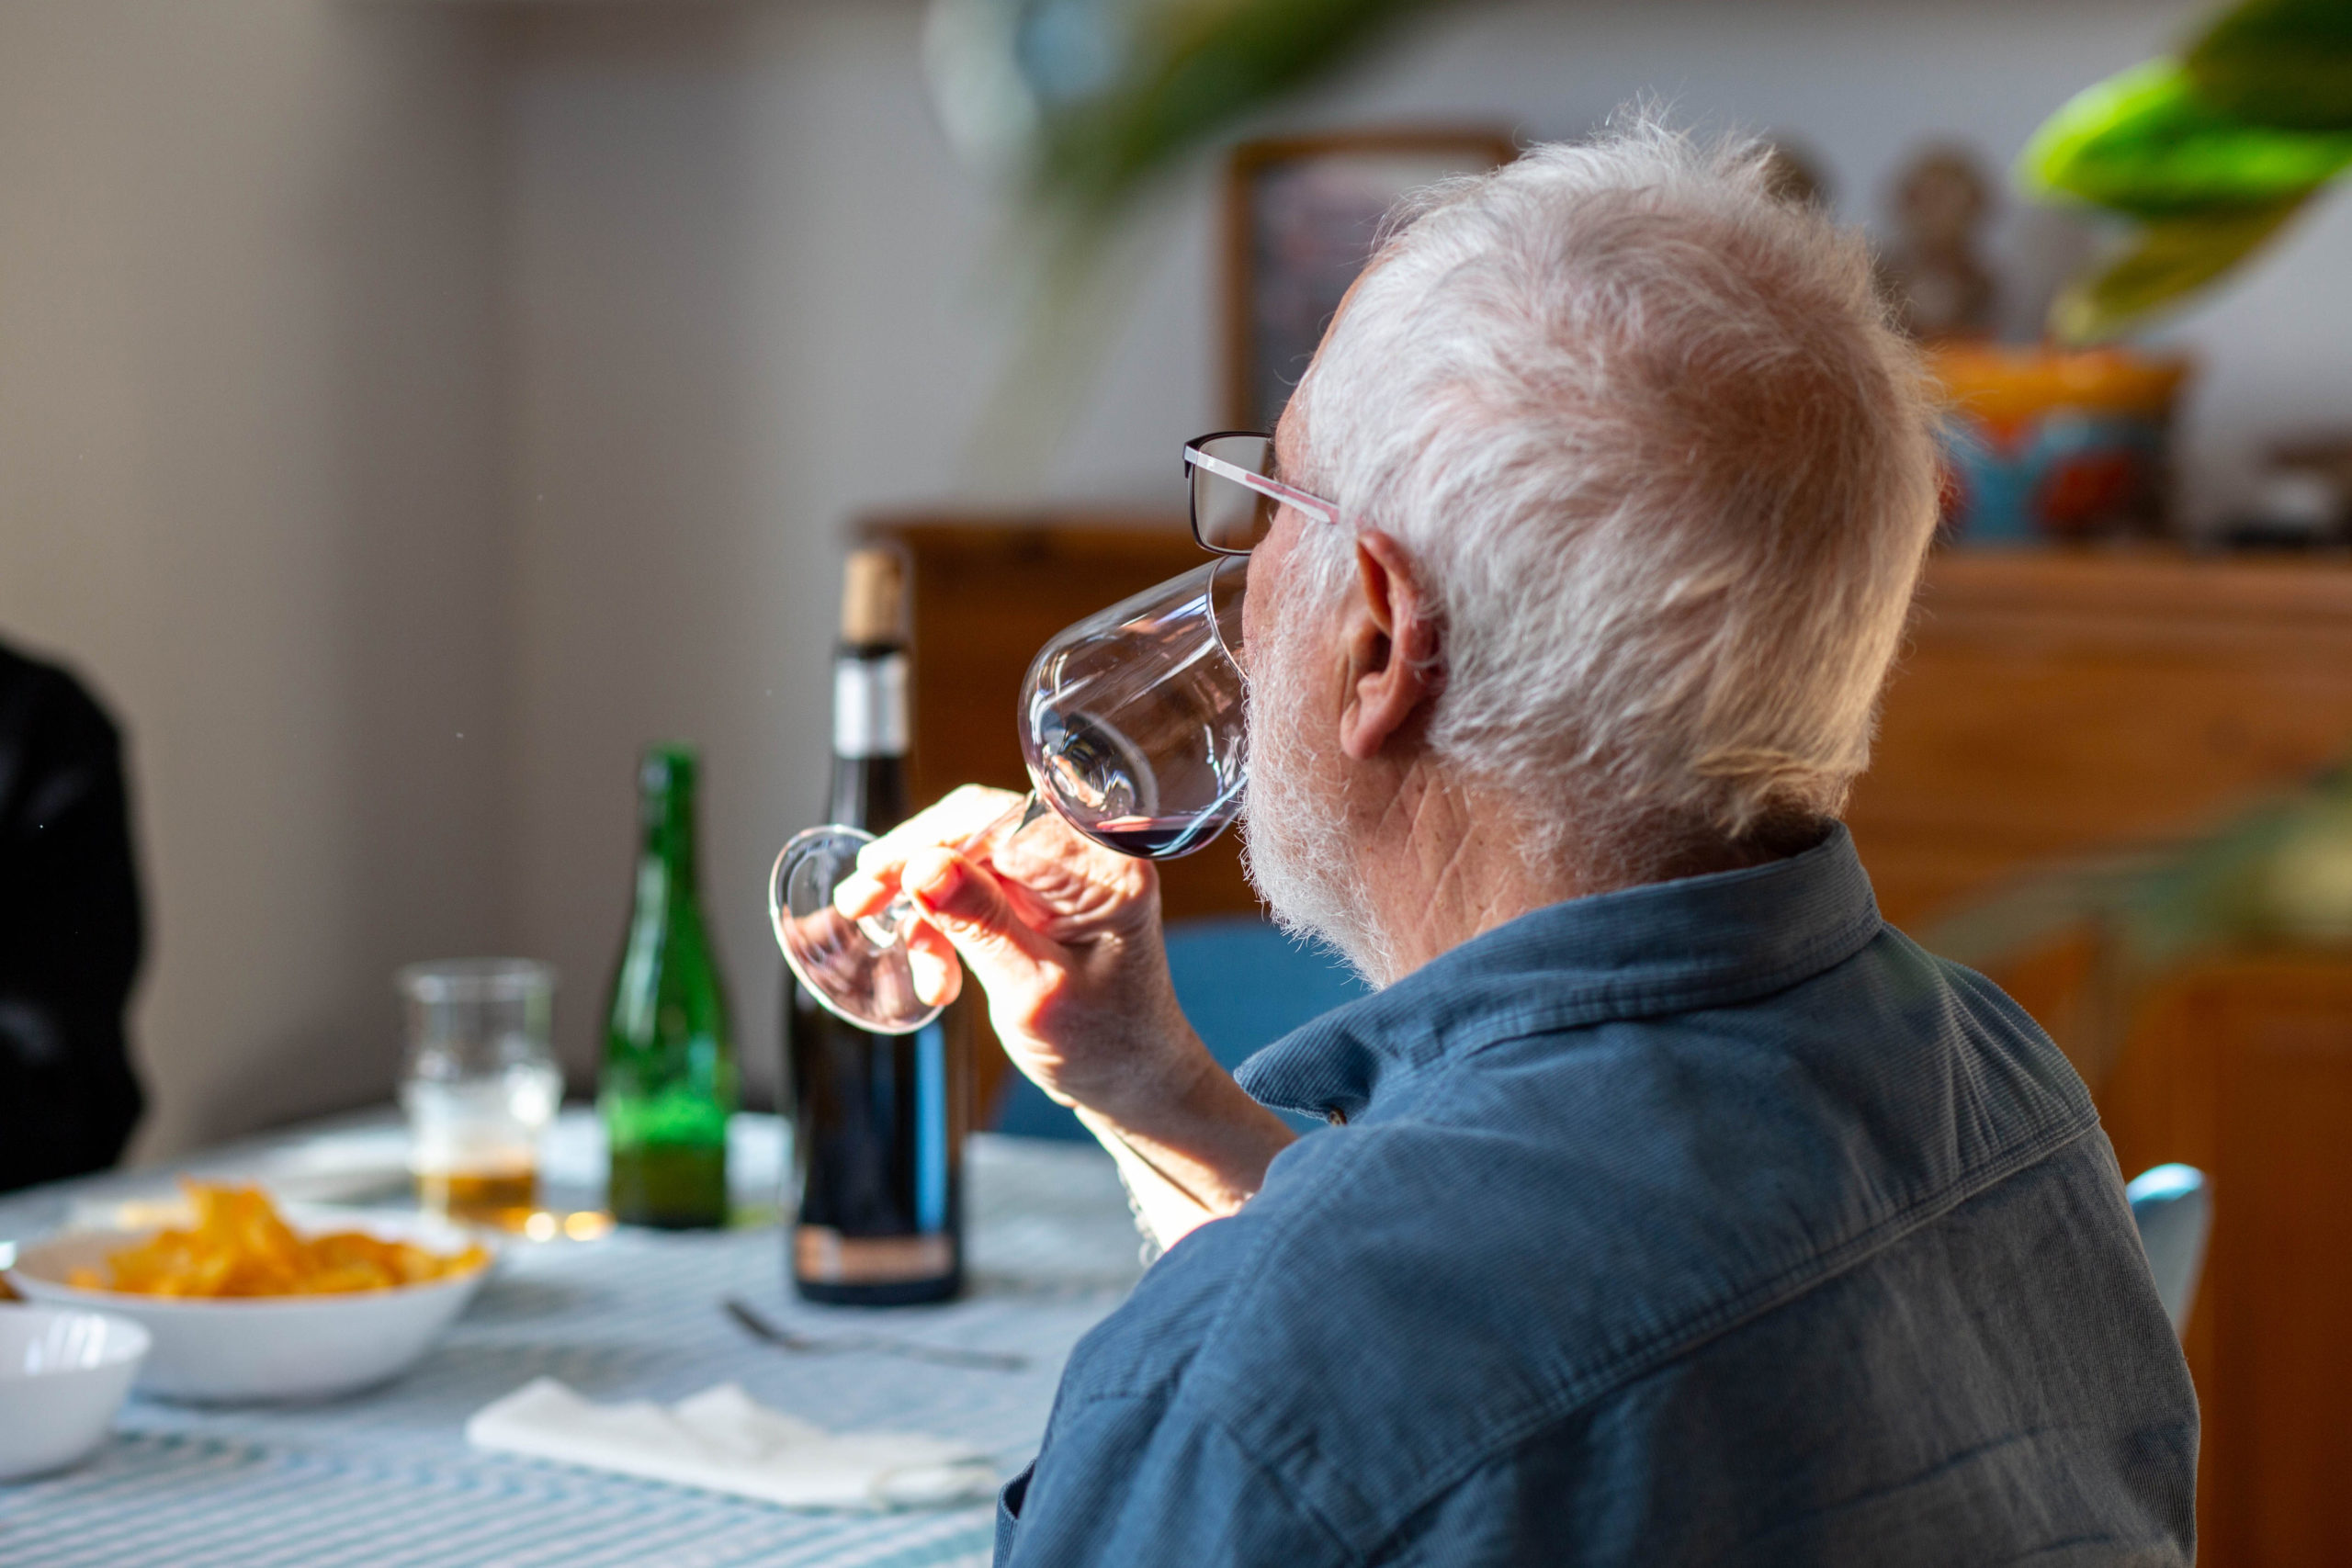 Home prenent una copa de vi en un dinar al menjador de casa